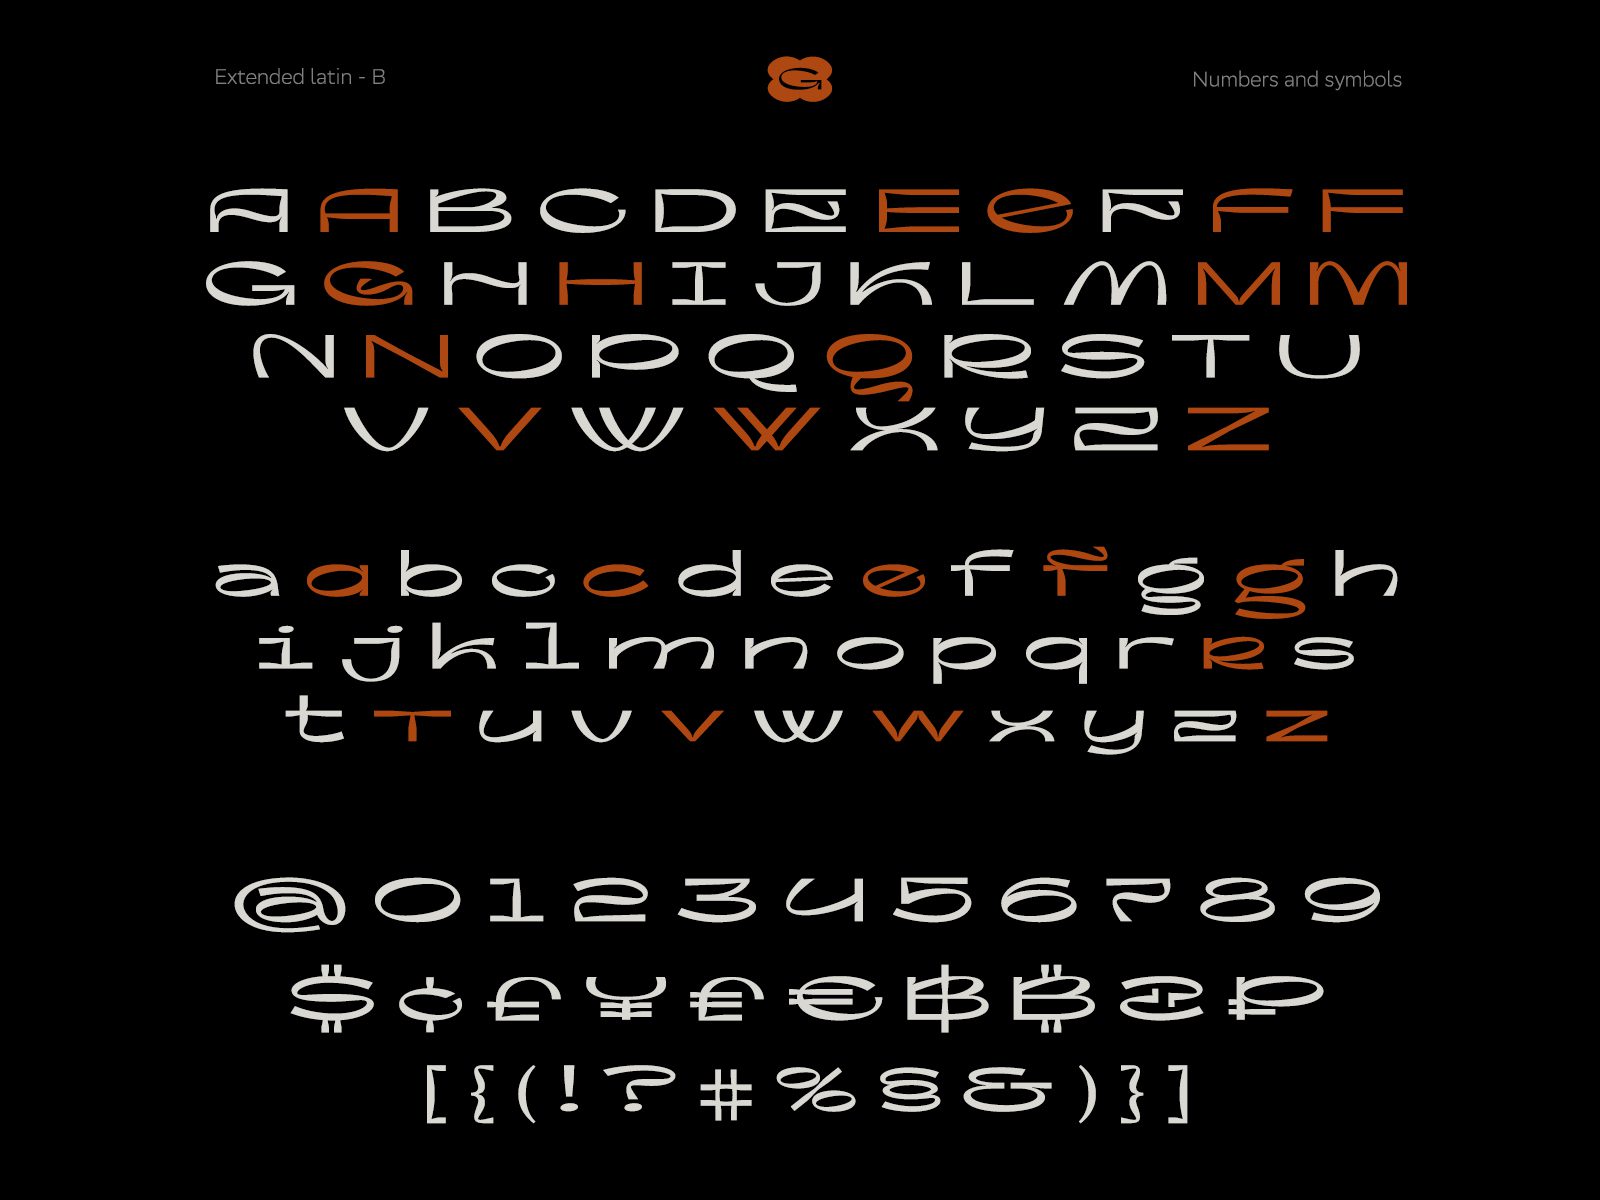 高质量现代酸性艺术抽象图形风格海报杂志排版英文字体 Flogert Display Typeface 设计素材 第2张